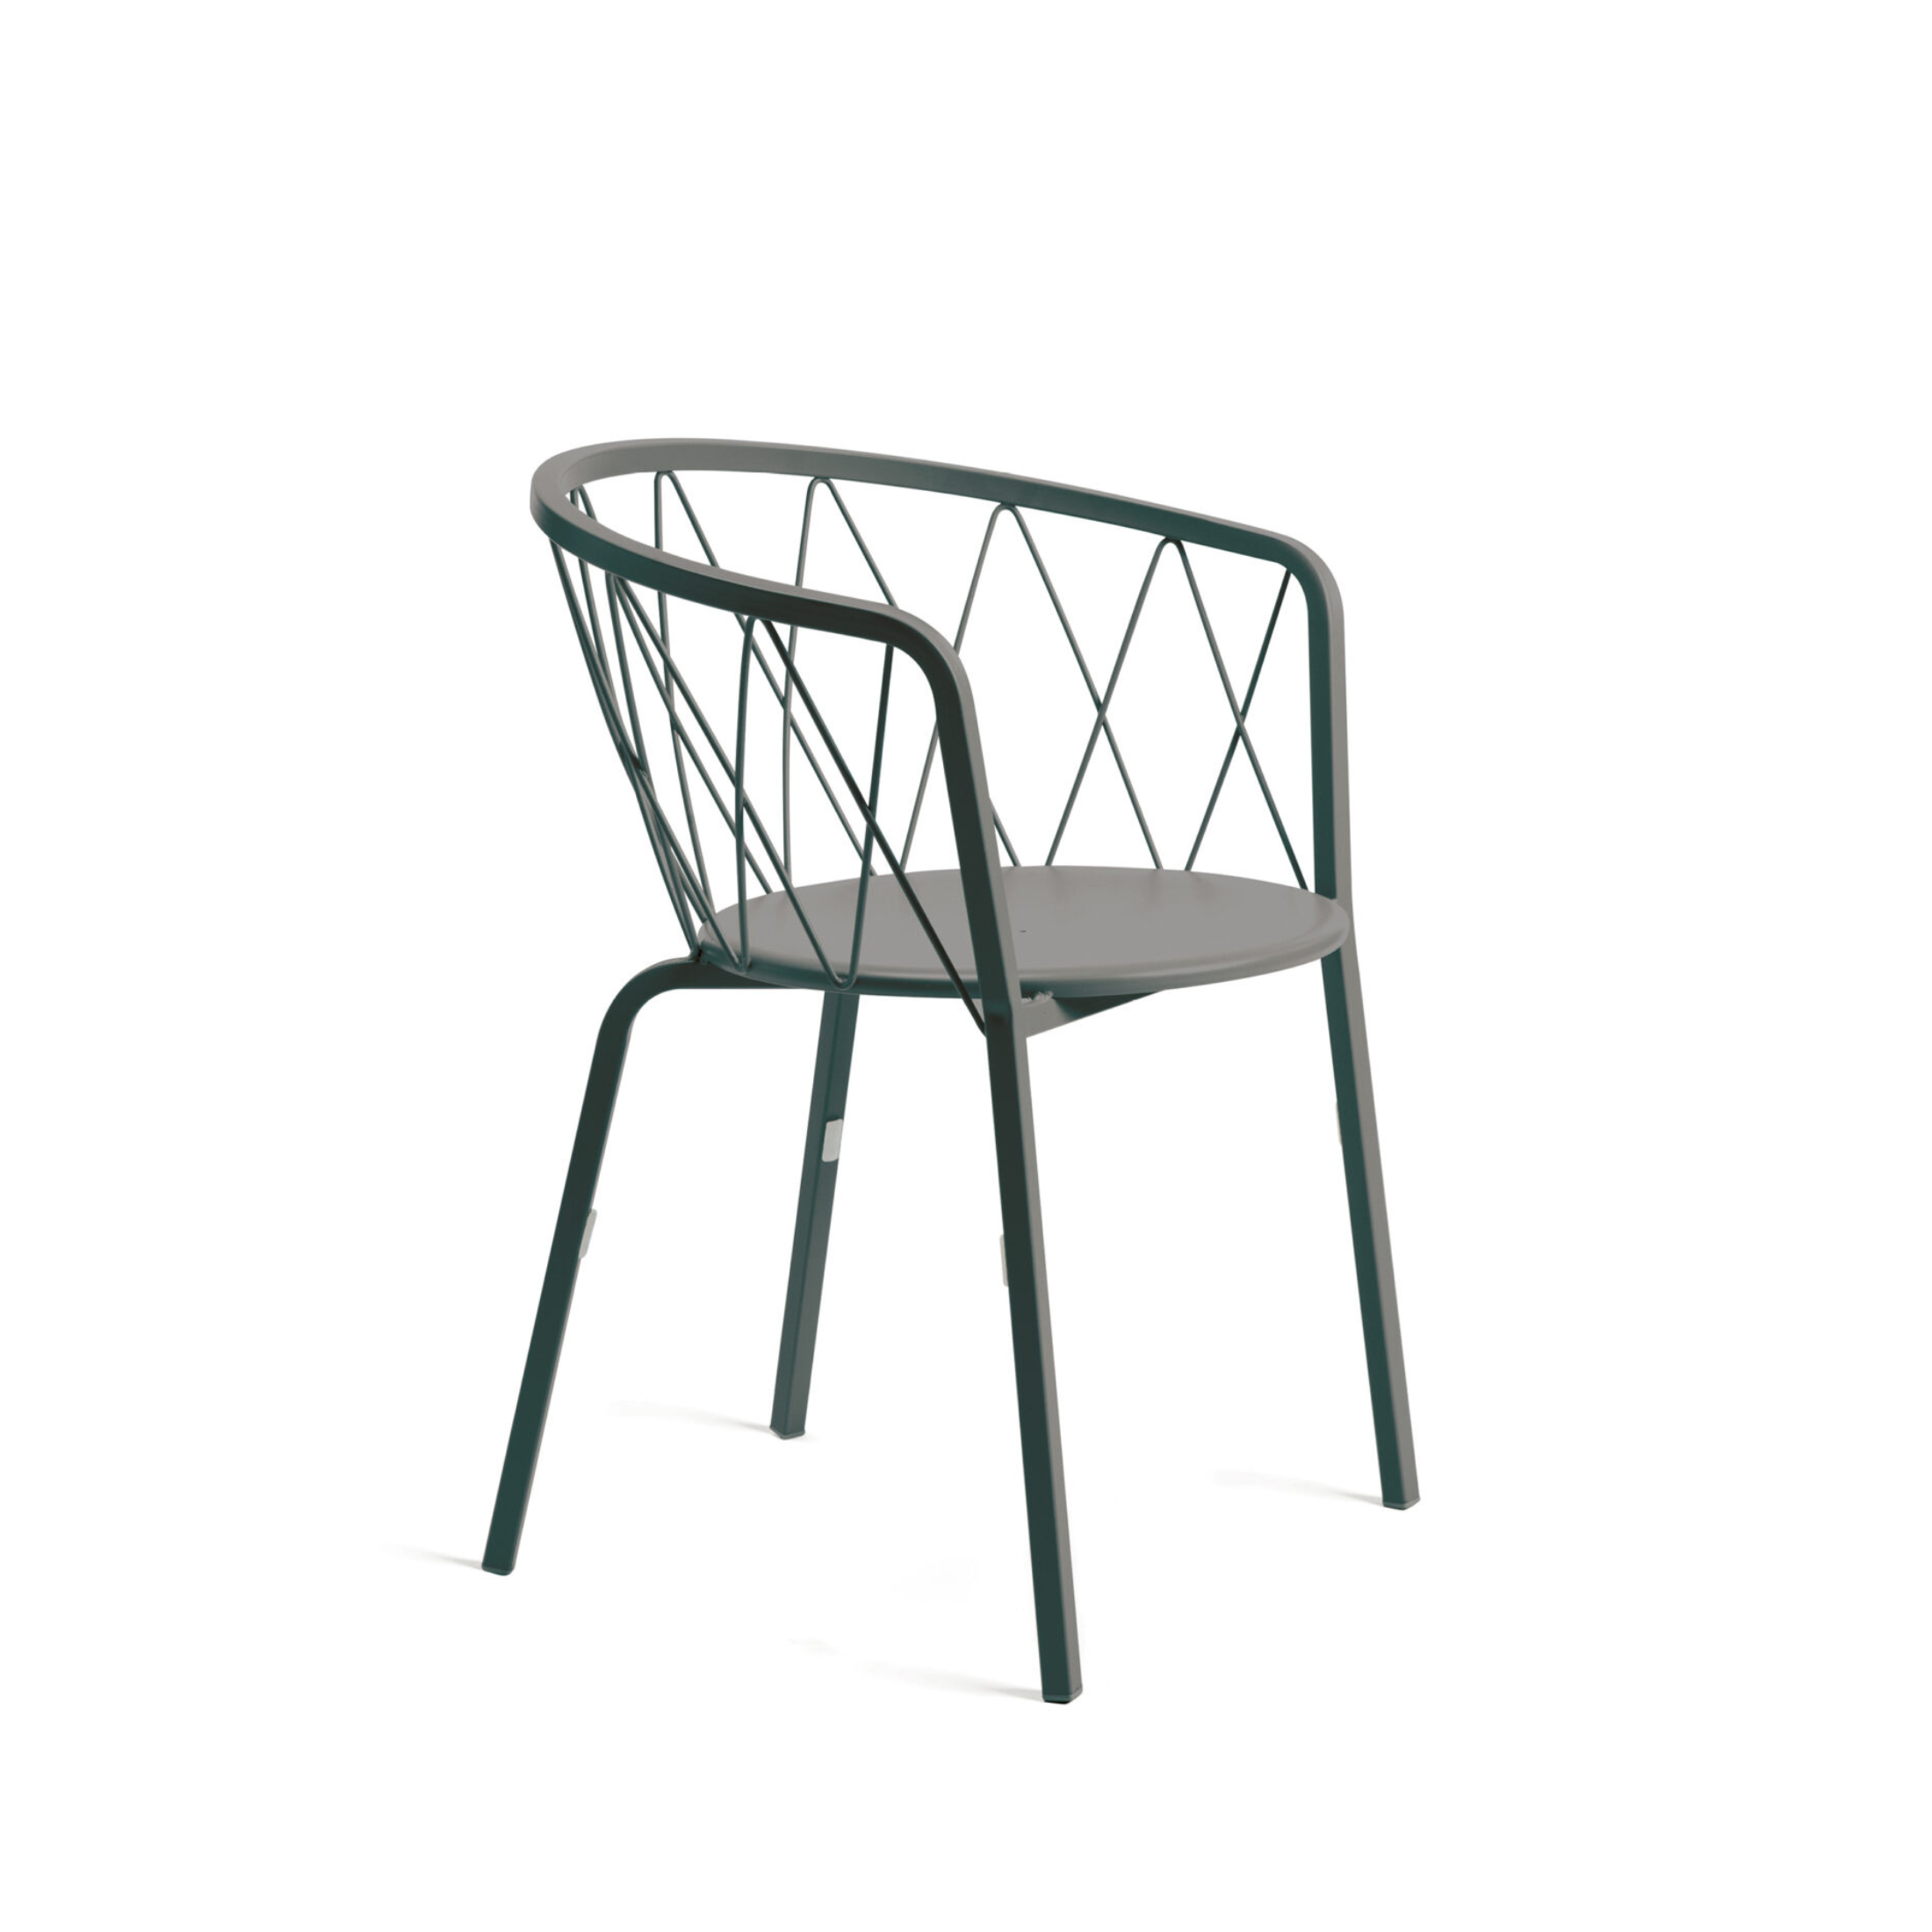 Poltrona da giardino in metallo verniciato "Daisy" sedia impilabile cm 57x55 75h